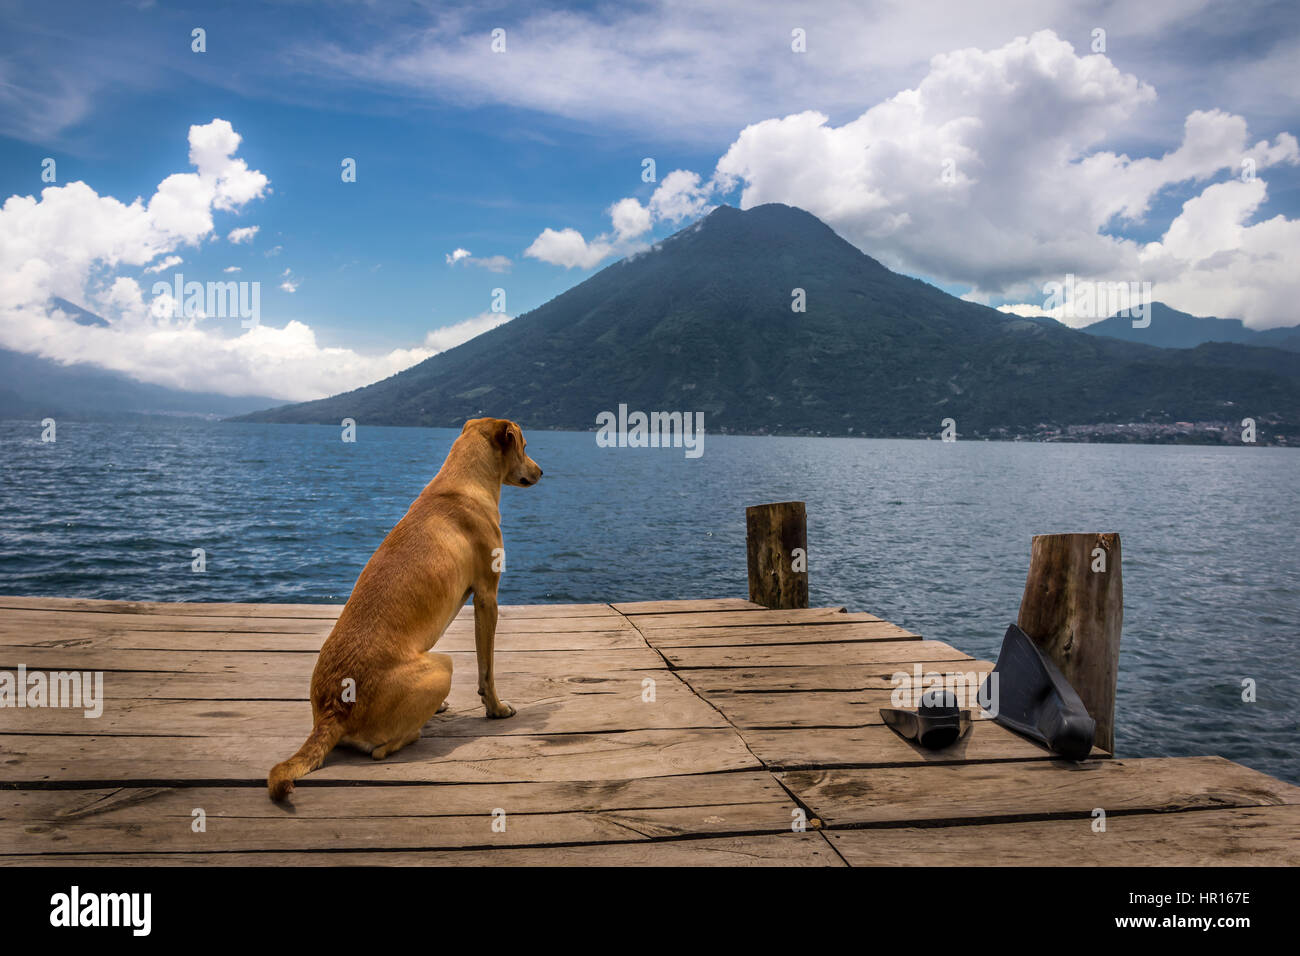 Cane in un molo in legno cercando di orizzonte a lago Atitlan con San Pedro vulcano sullo sfondo - San Marcos La Laguna, Guatemala Foto Stock